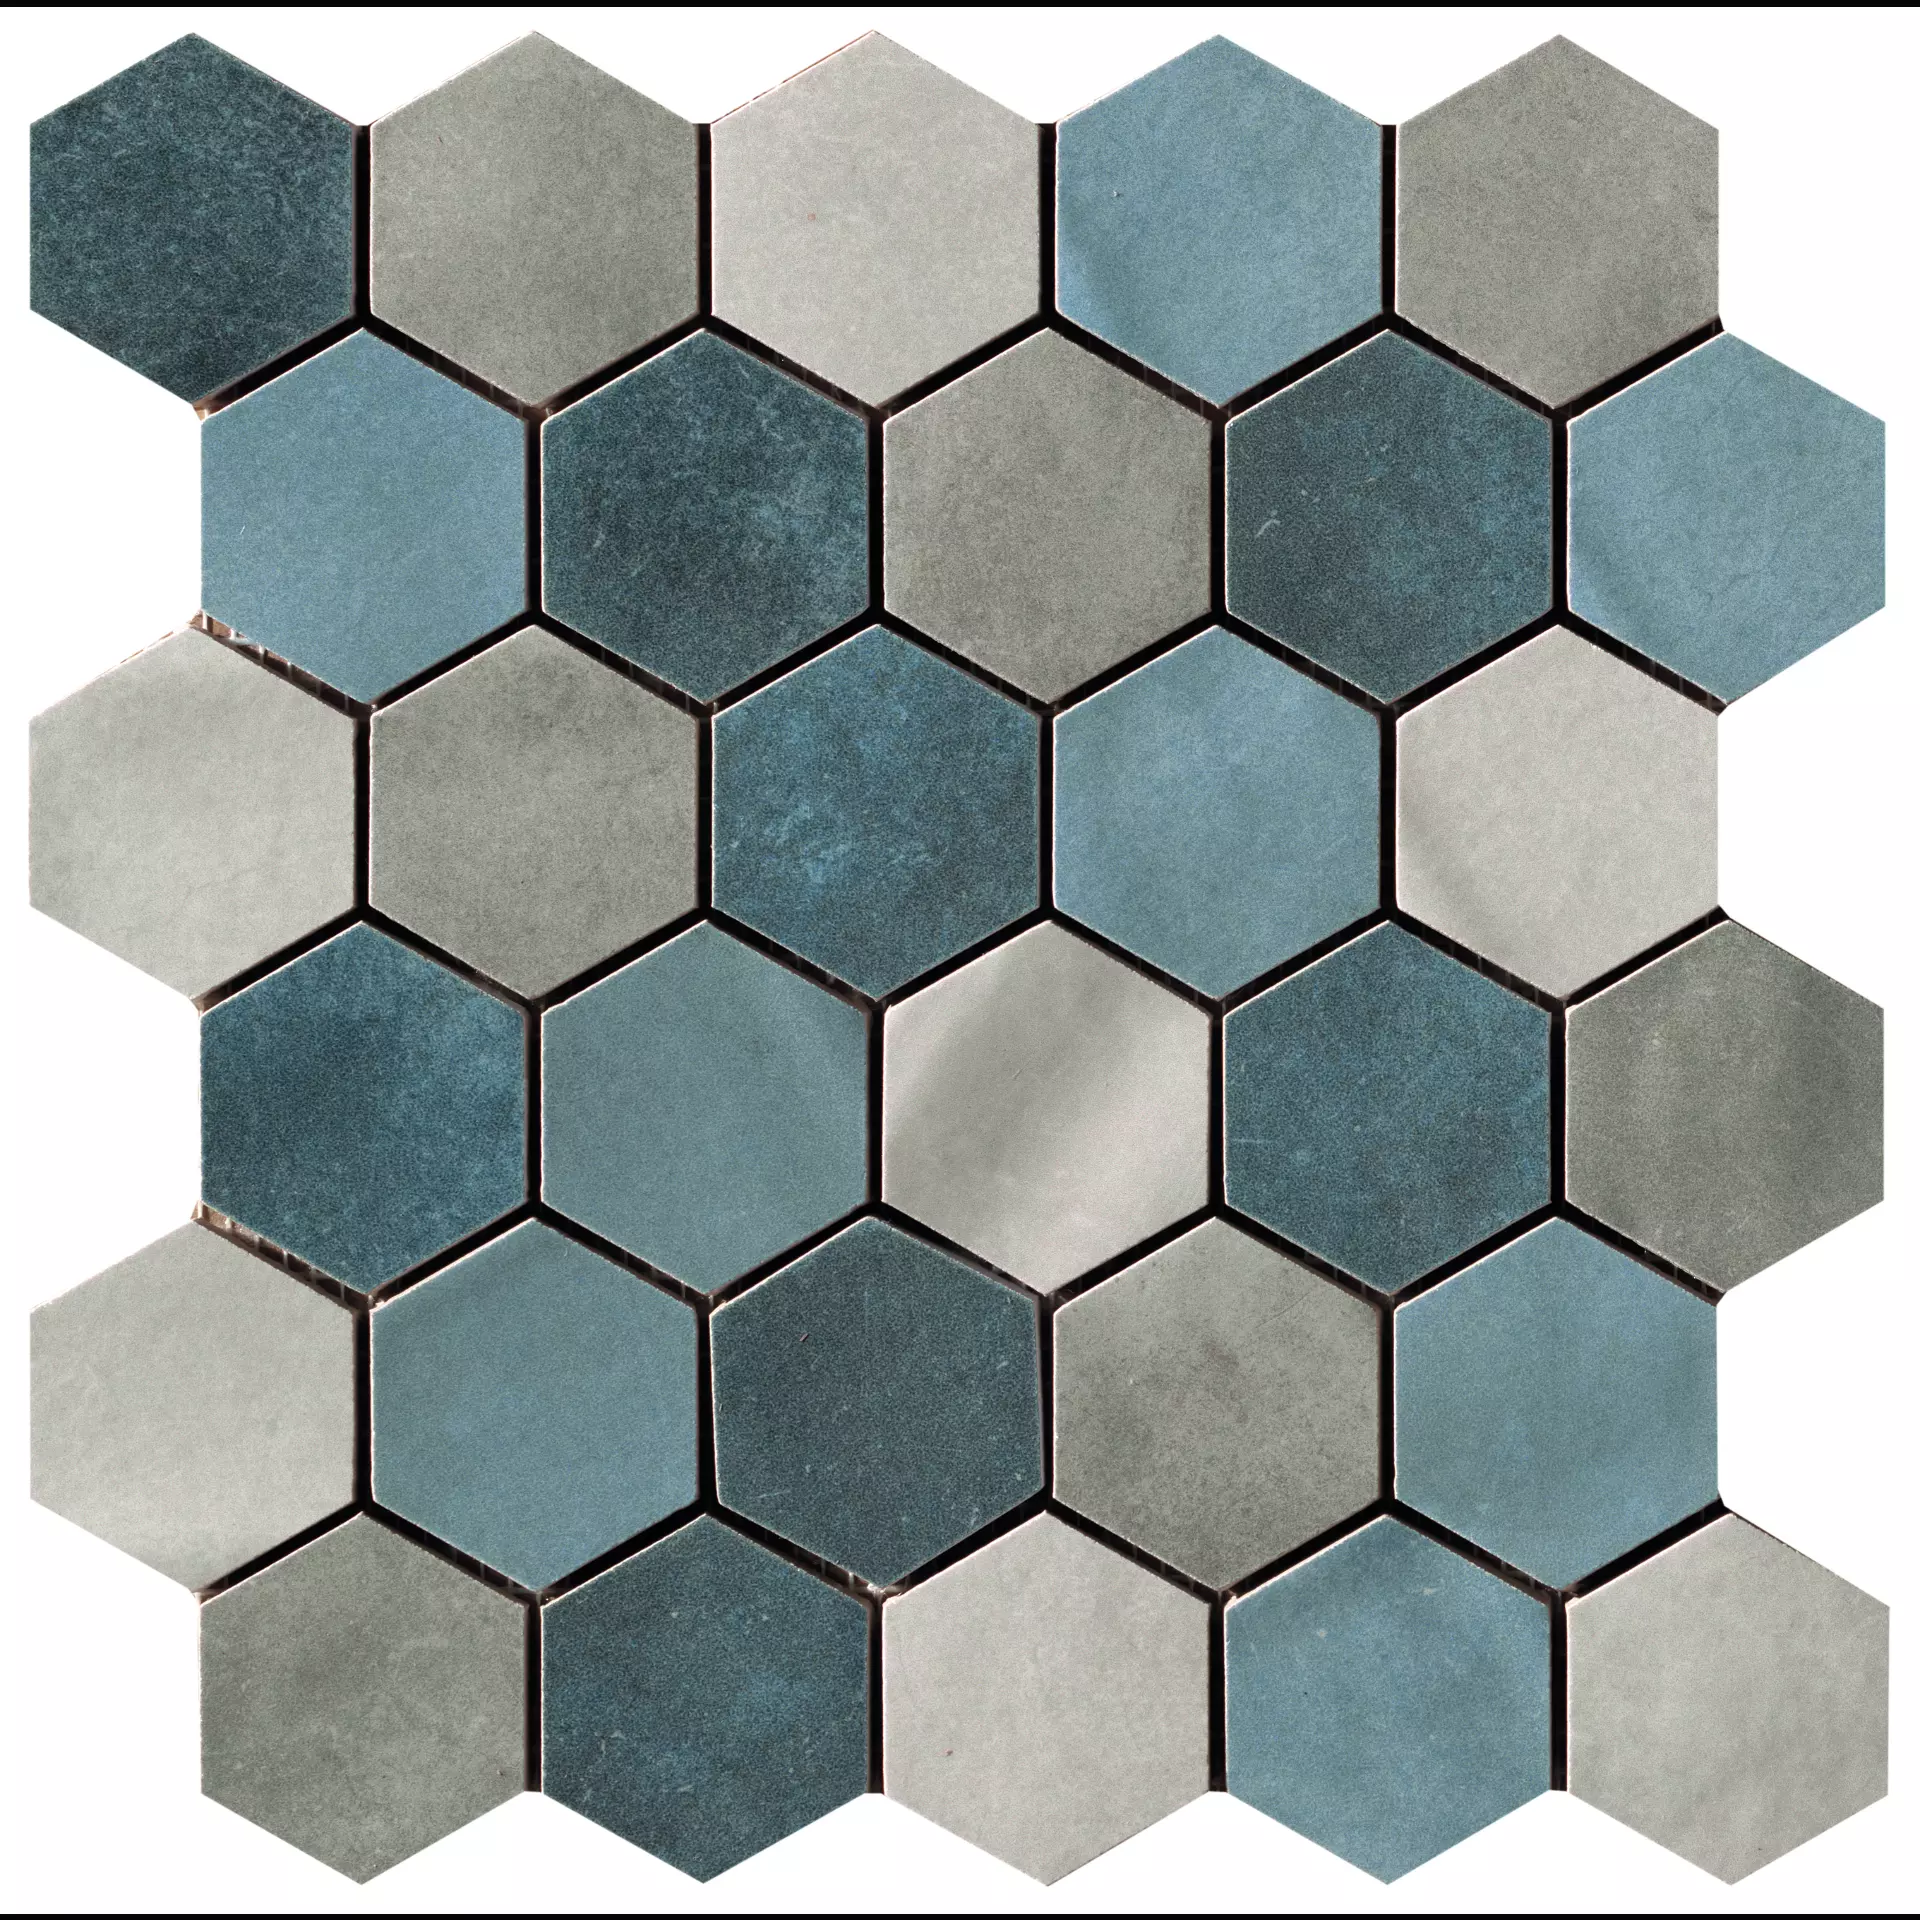 CIR Materia Prima Blue Naturale Mosaik Hexagon Mix 1069919 27x27cm